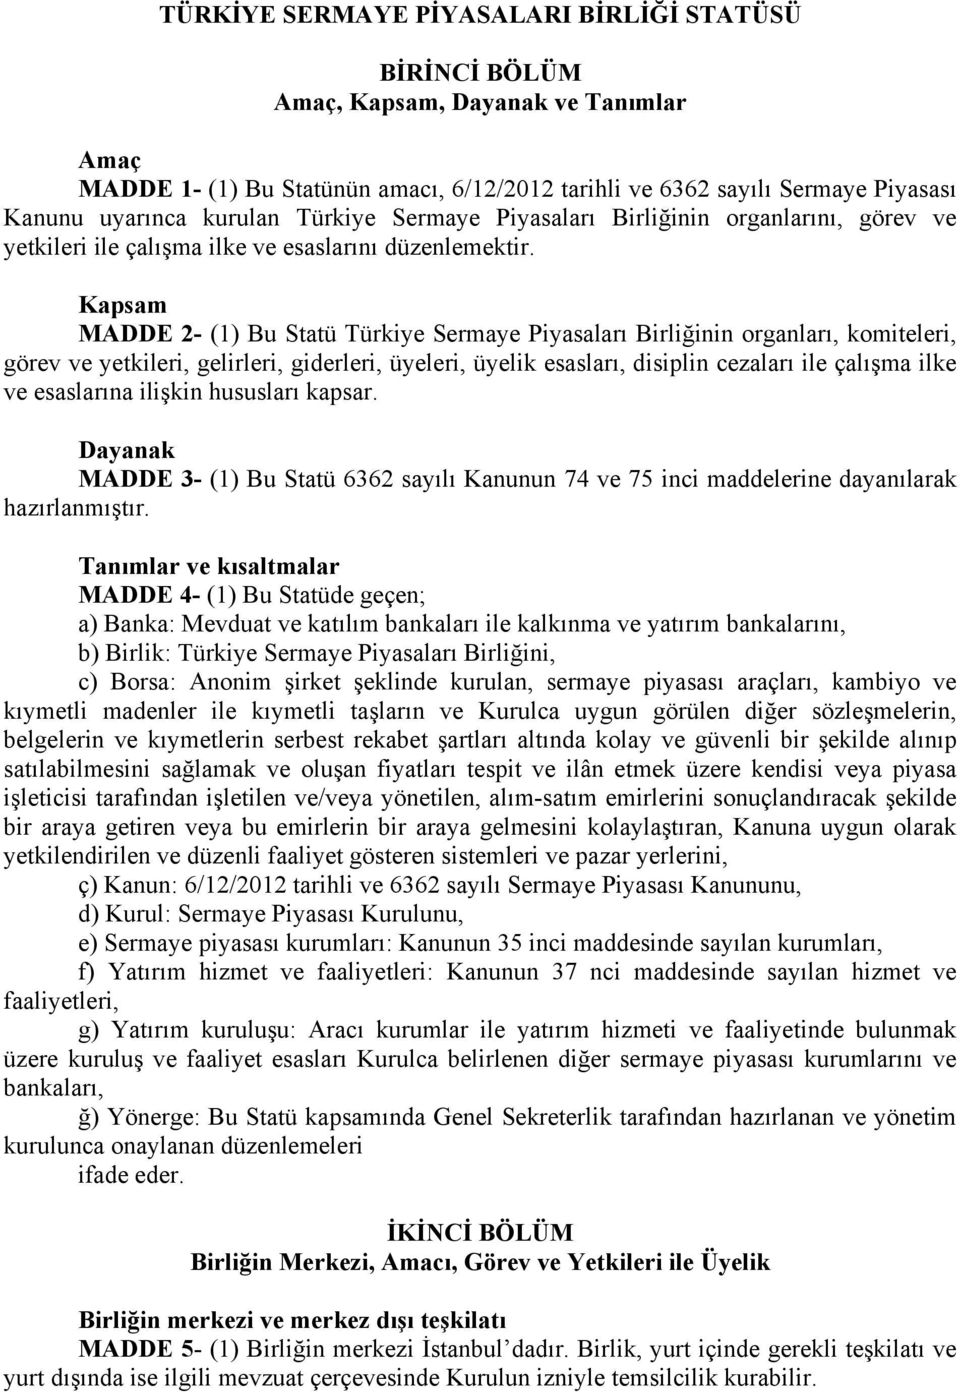 Kapsam MADDE 2- (1) Bu Statü Türkiye Sermaye Piyasaları Birliğinin organları, komiteleri, görev ve yetkileri, gelirleri, giderleri, üyeleri, üyelik esasları, disiplin cezaları ile çalışma ilke ve